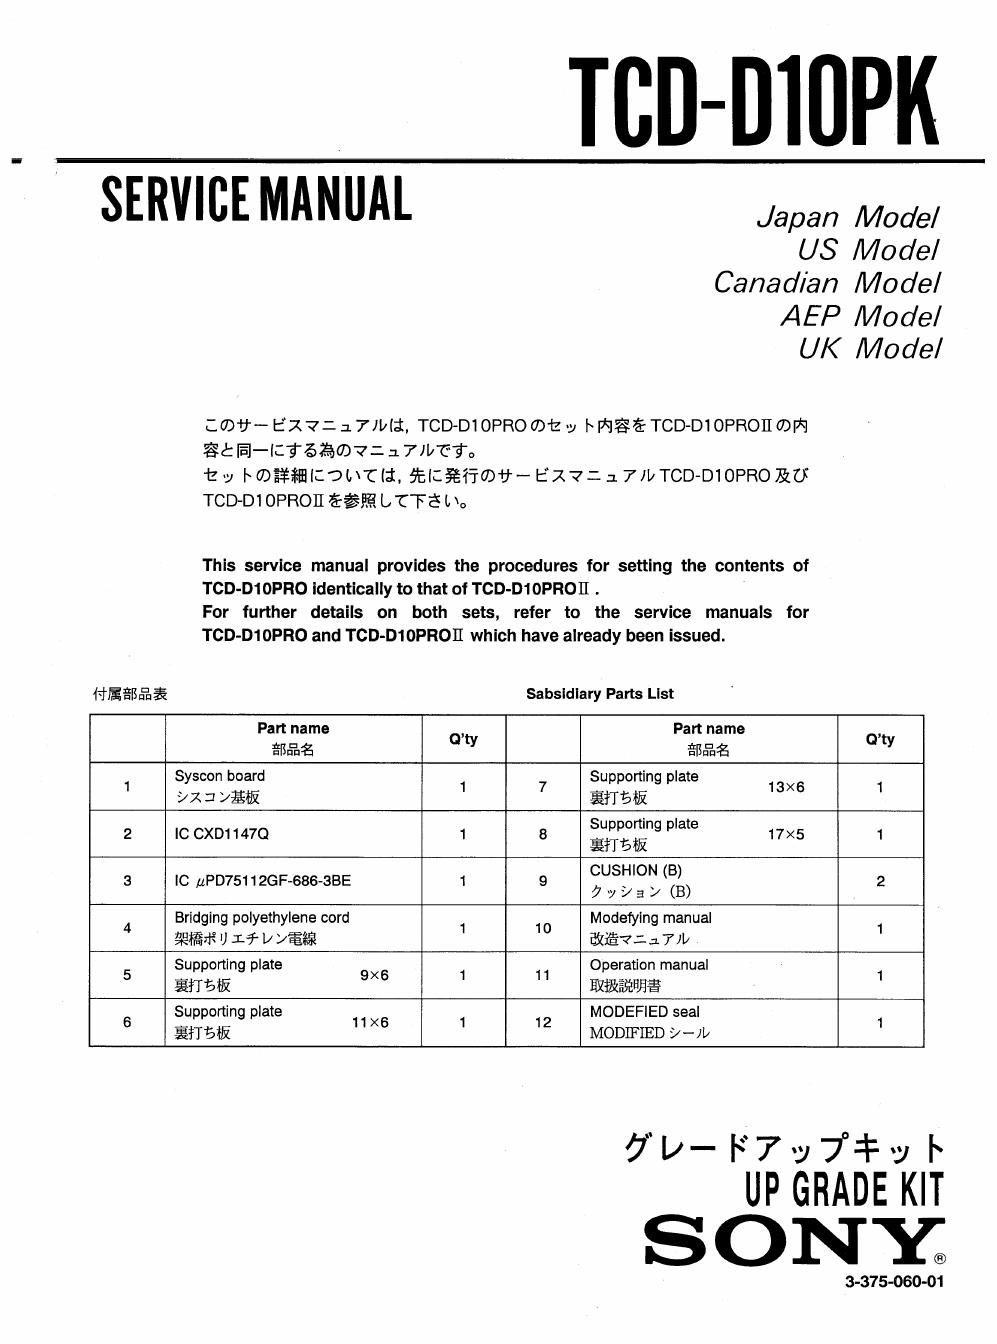 sony tcd d 10 pk service manual